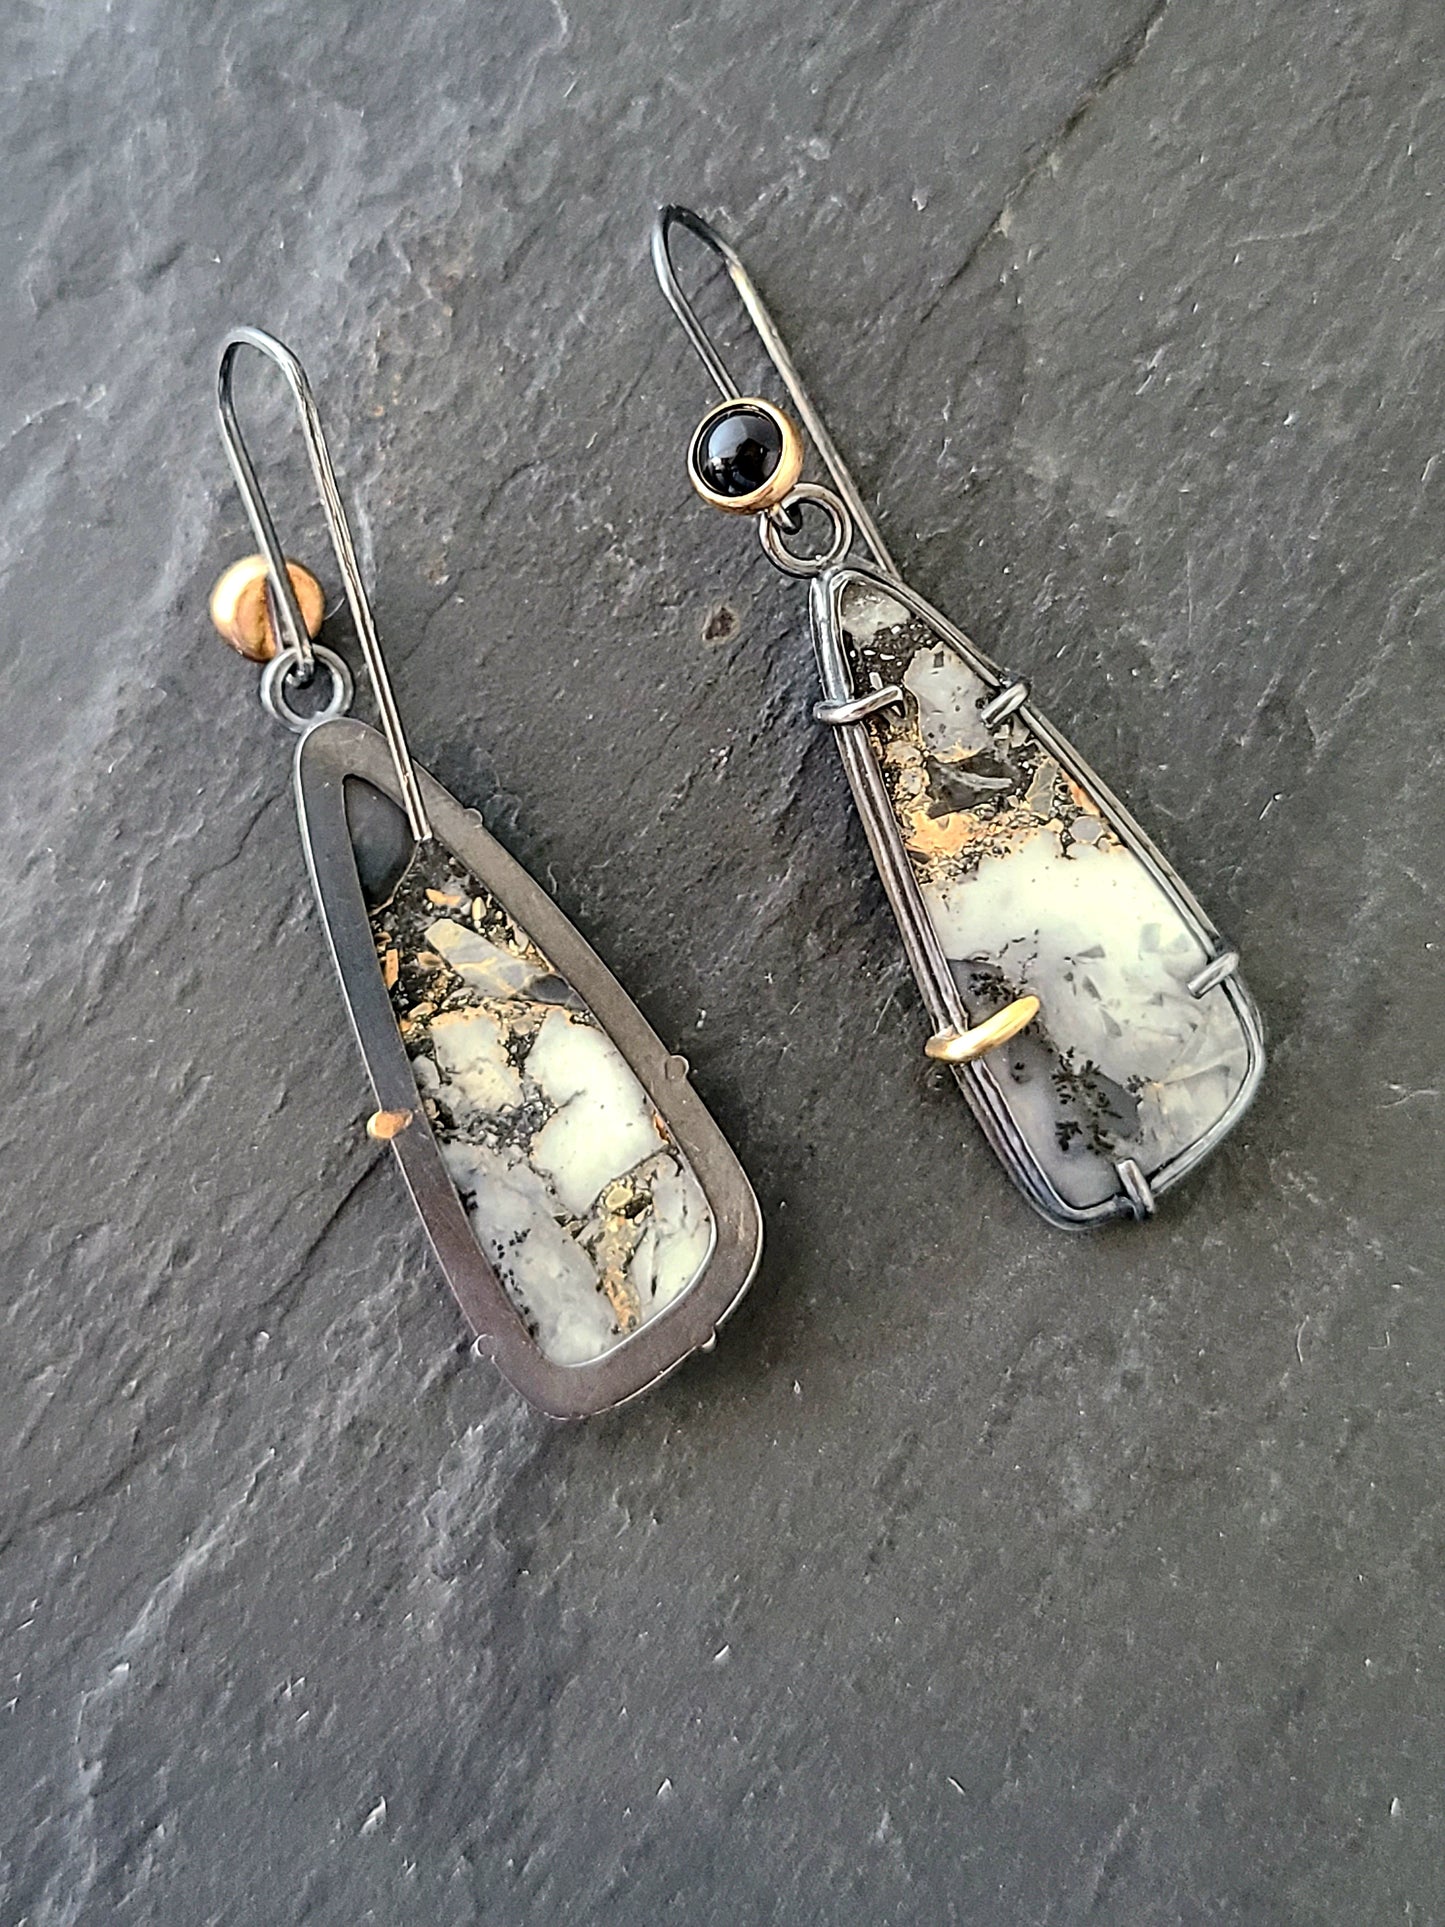 Maligano Jasper and Onyx earrings-SS/14k